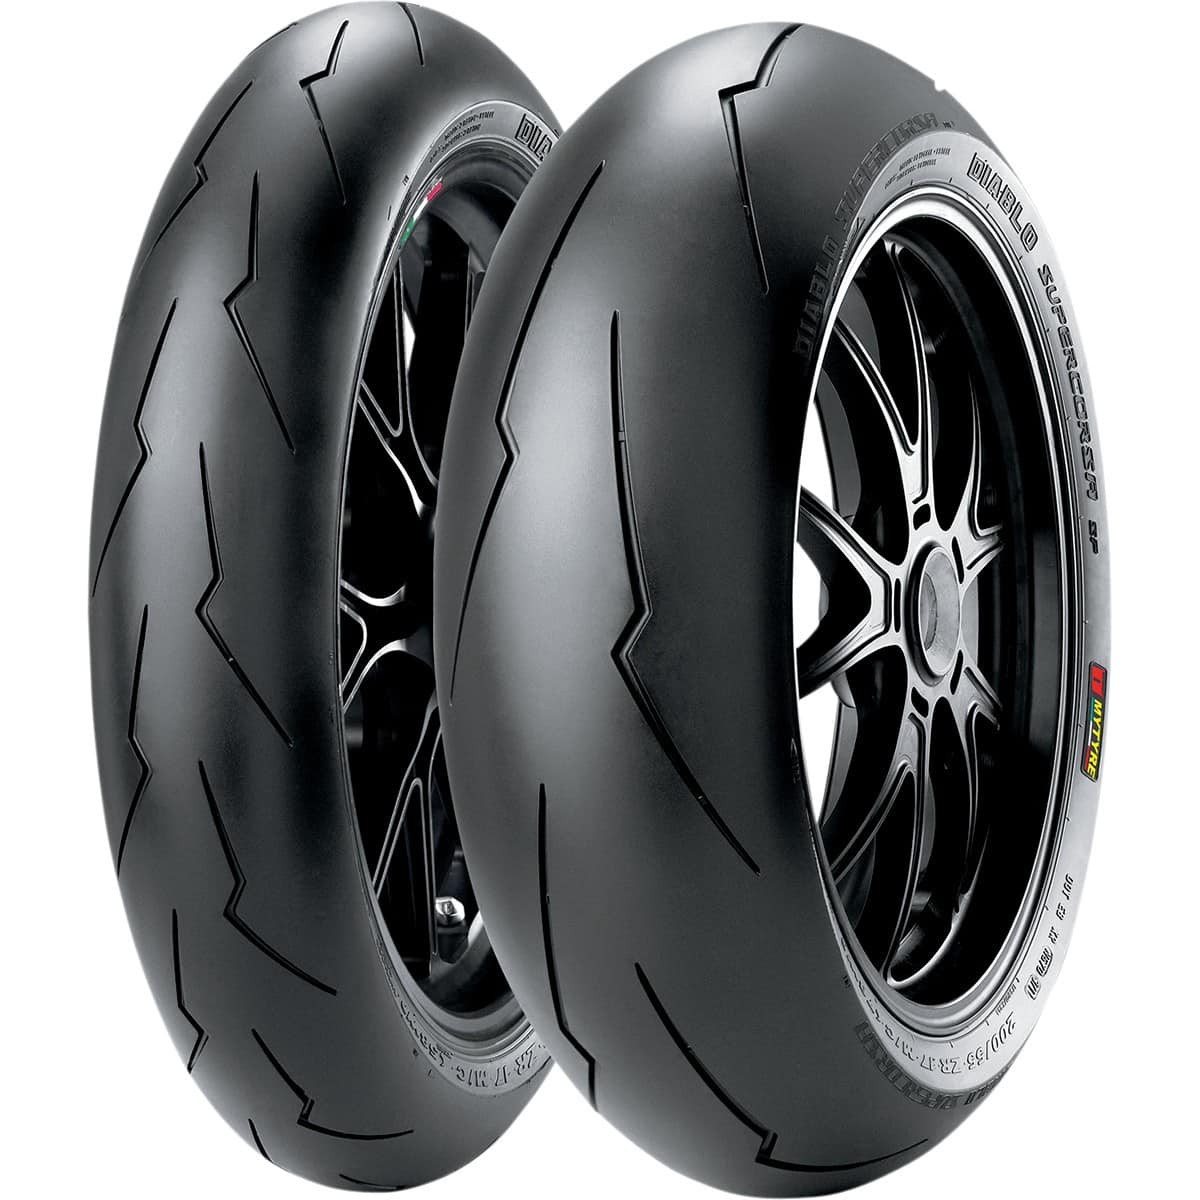 Thiết kế lốp xe máy Pirelli cực ấn tượng